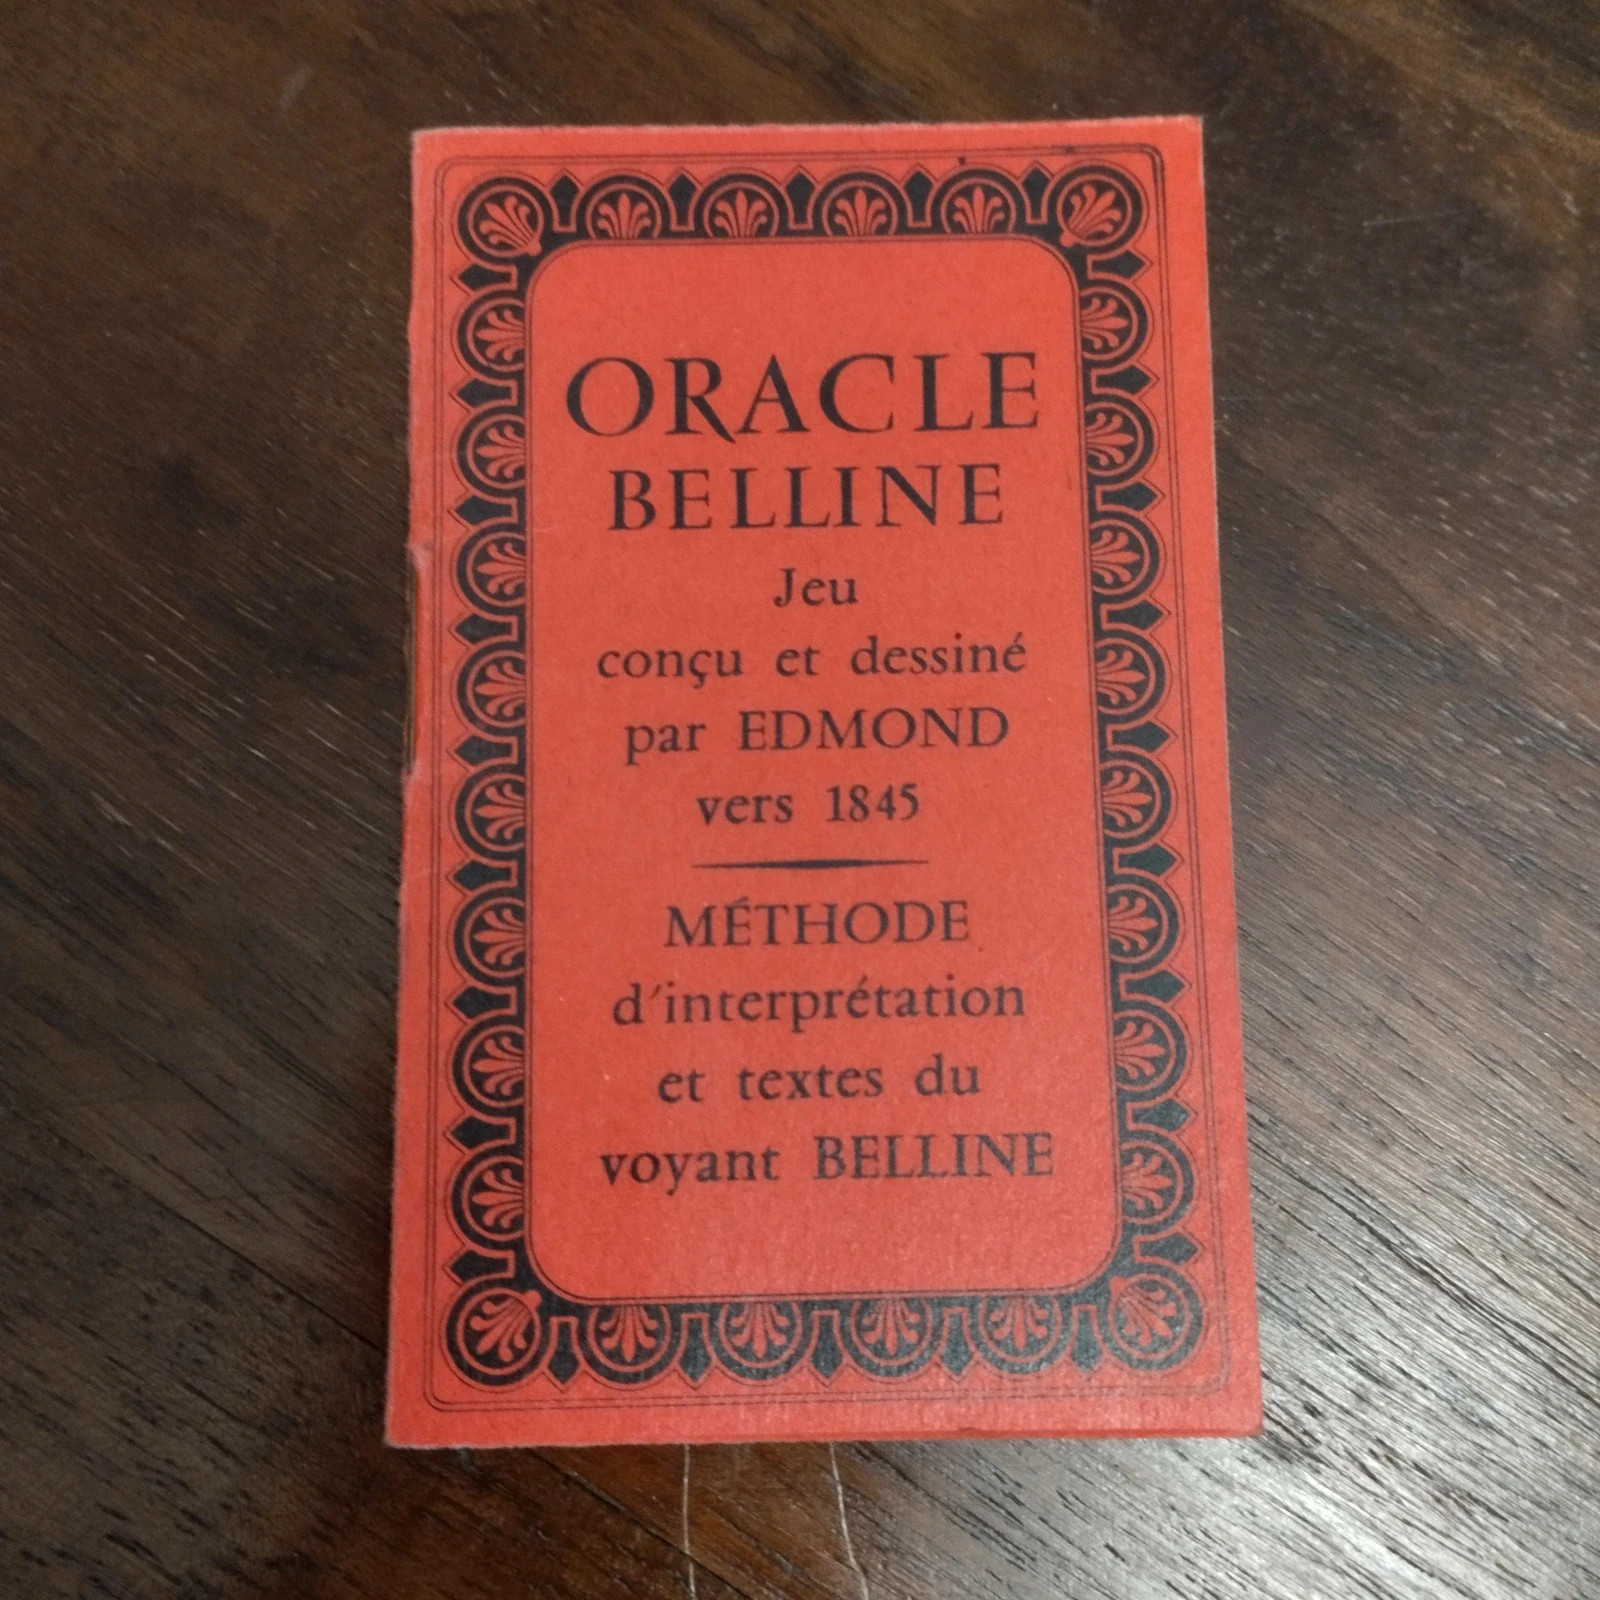 Lot Detail - Oracle Belline Tarot Cards. Paris: La Ducale, 1961